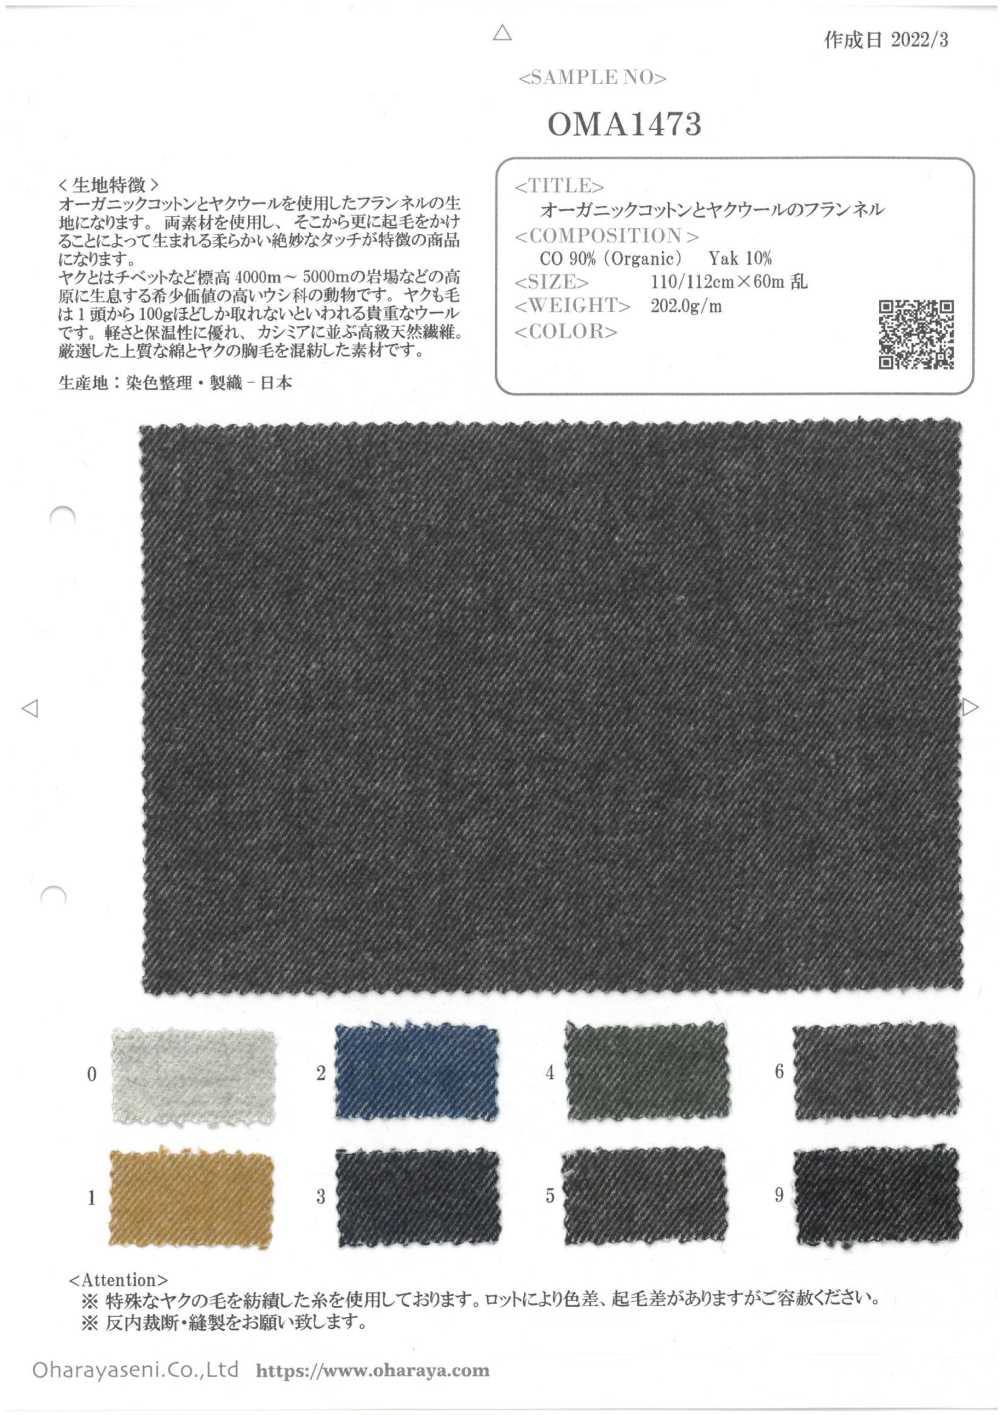 OMA1473 Flanelle De Coton Biologique Et De Laine De Yak[Fabrication De Textile] Oharayaseni